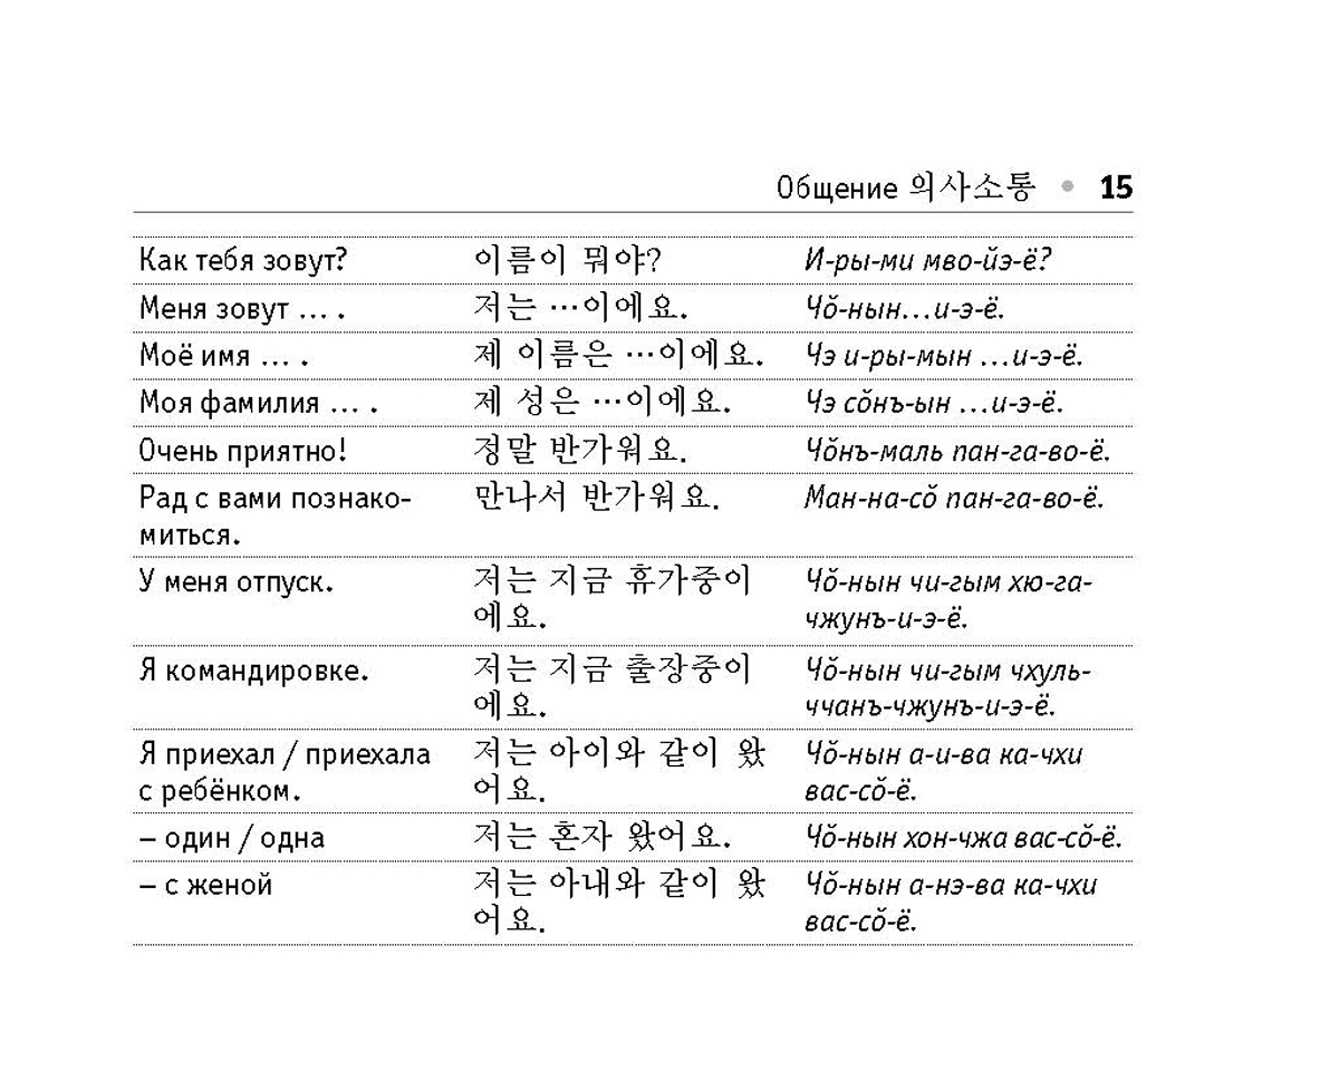 Скороговорки на английском языке с переводом: для развития произношения и речи, короткие и длинные